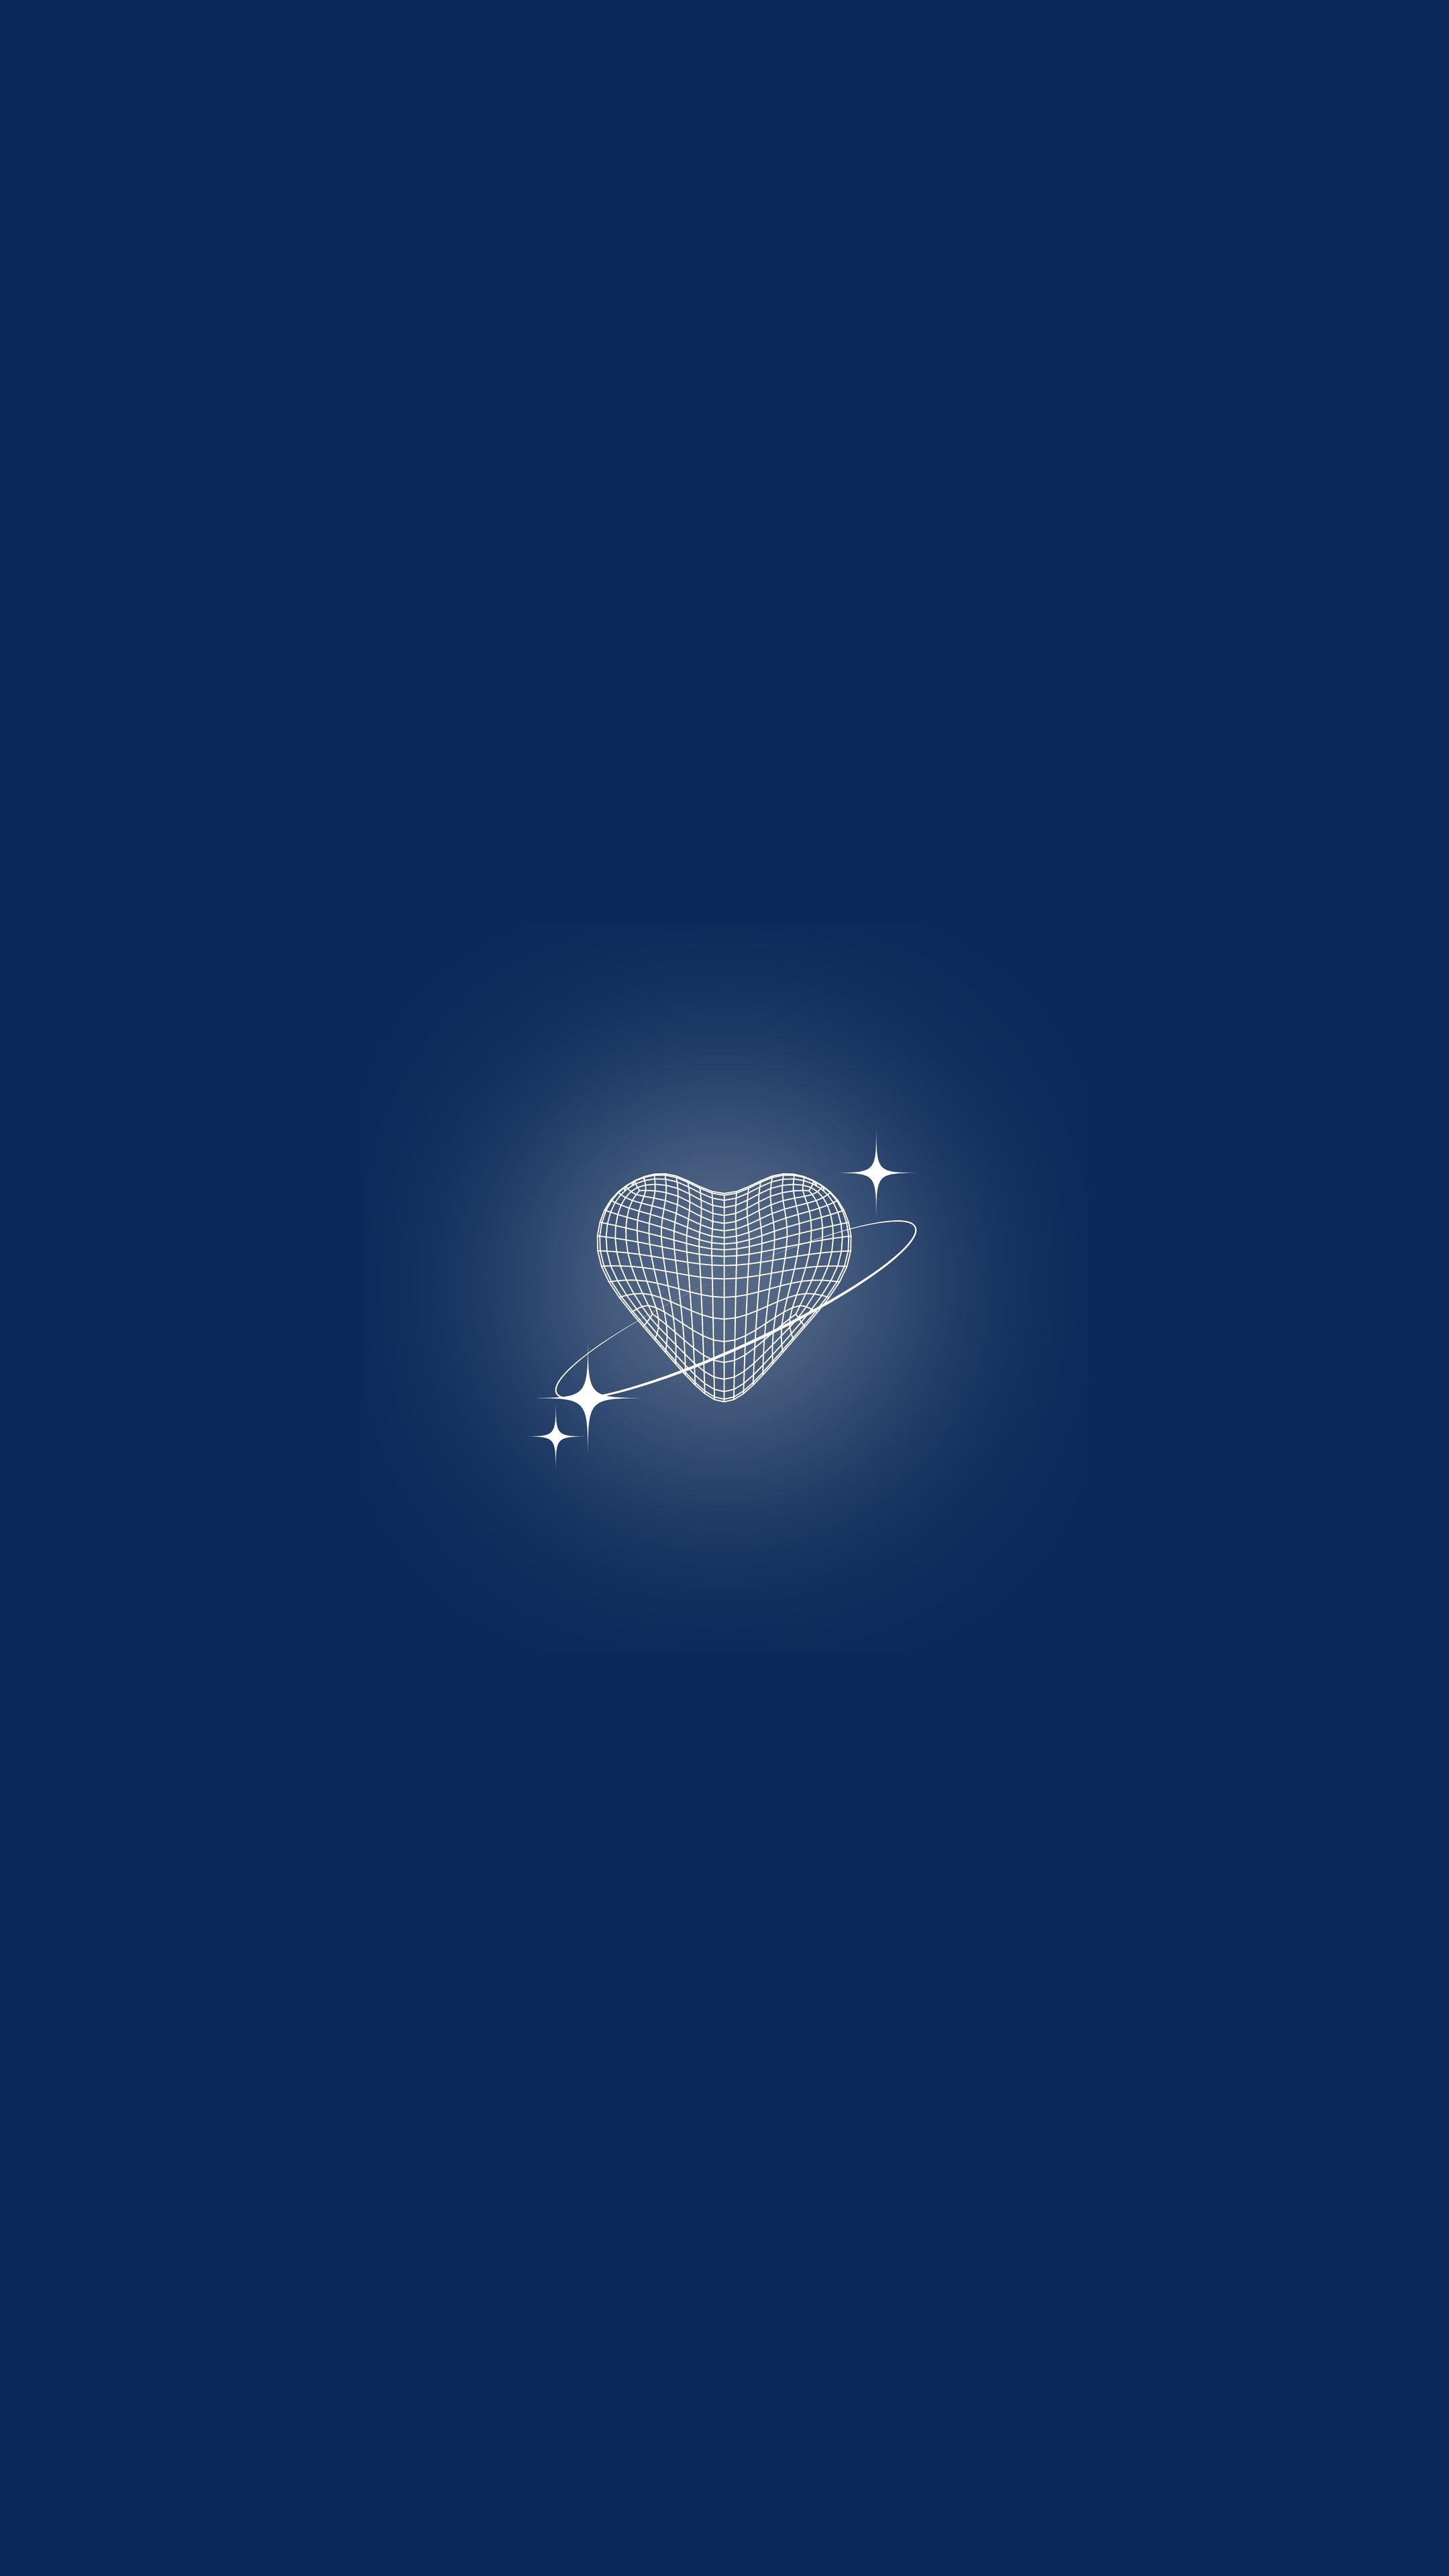 Shining Heart on Dark Blue Background Hintergrund[c656dc8c75984ca4b8d4]